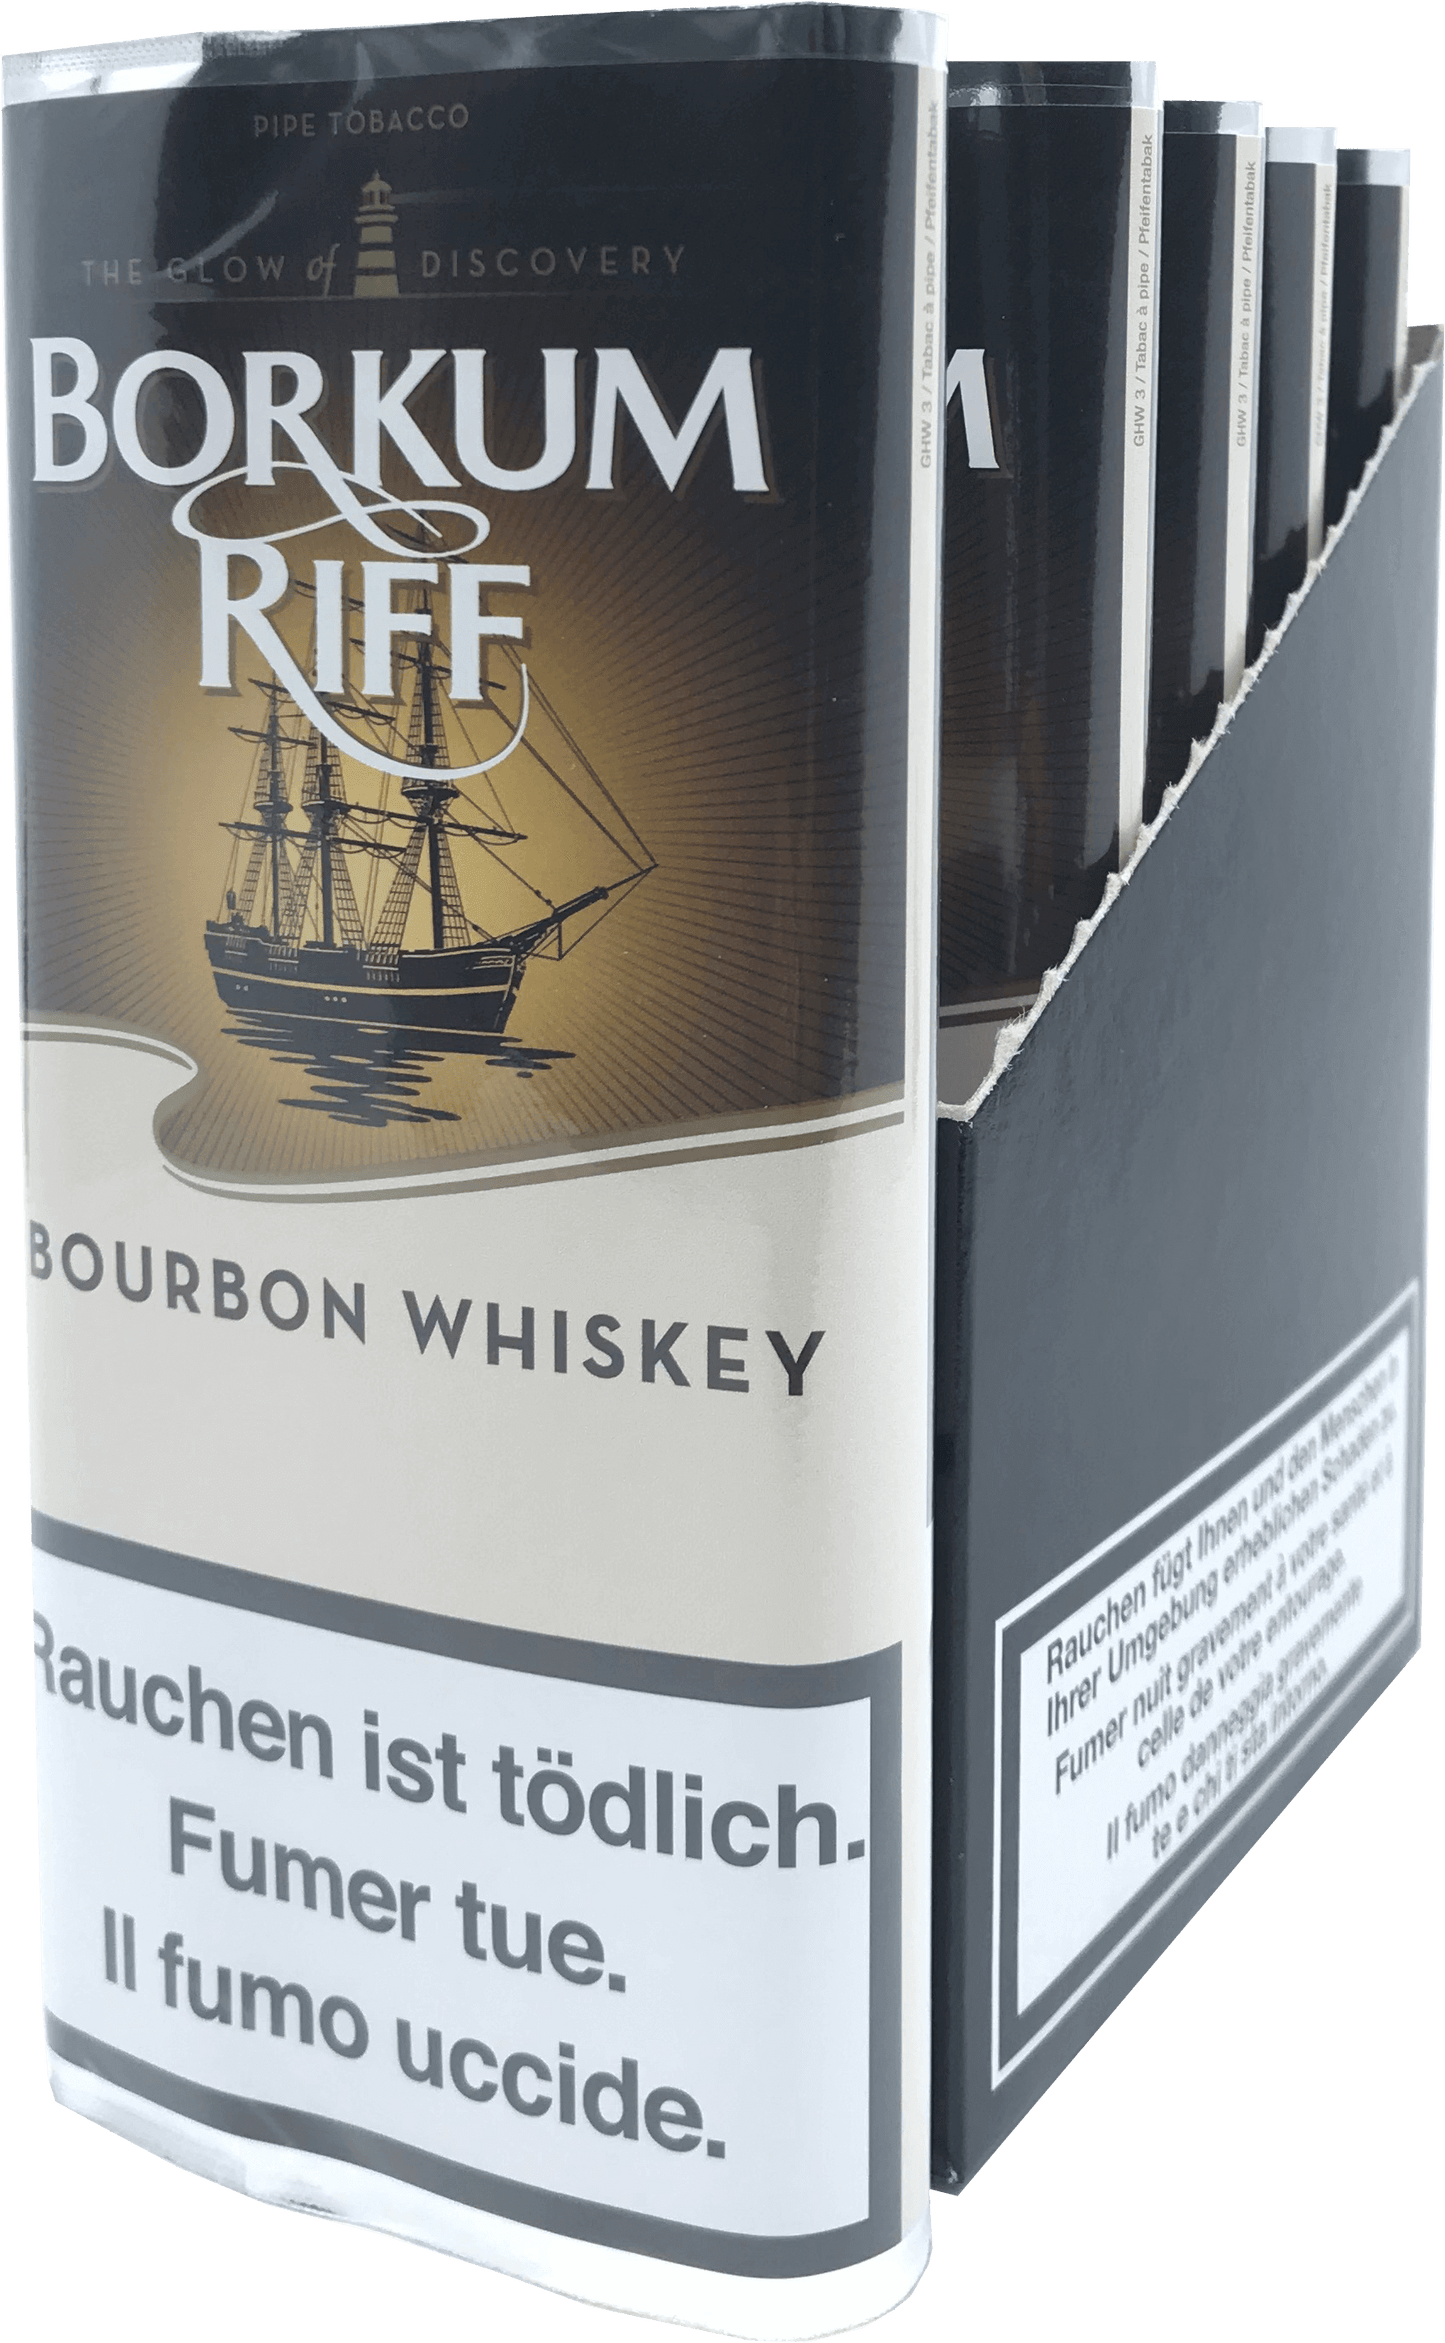 Borkum Riff Whiskey Beutel 50 g